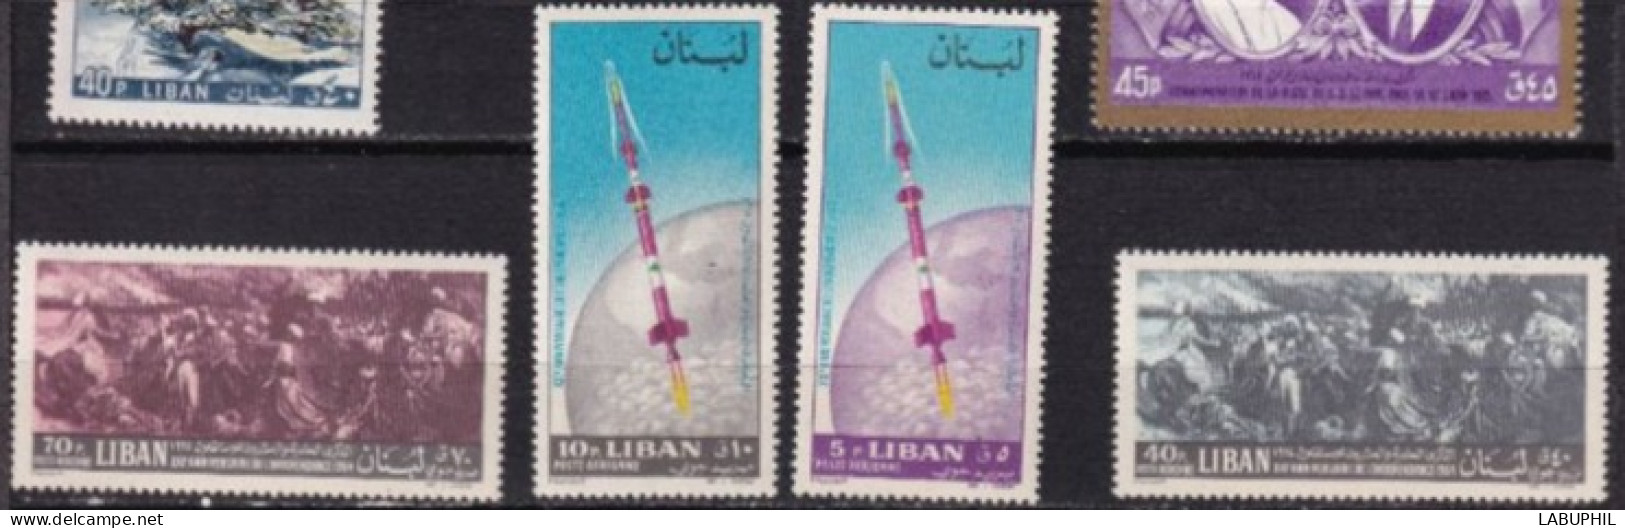 LIBAN MNH ** Poste Aerienne  1964 - Lebanon